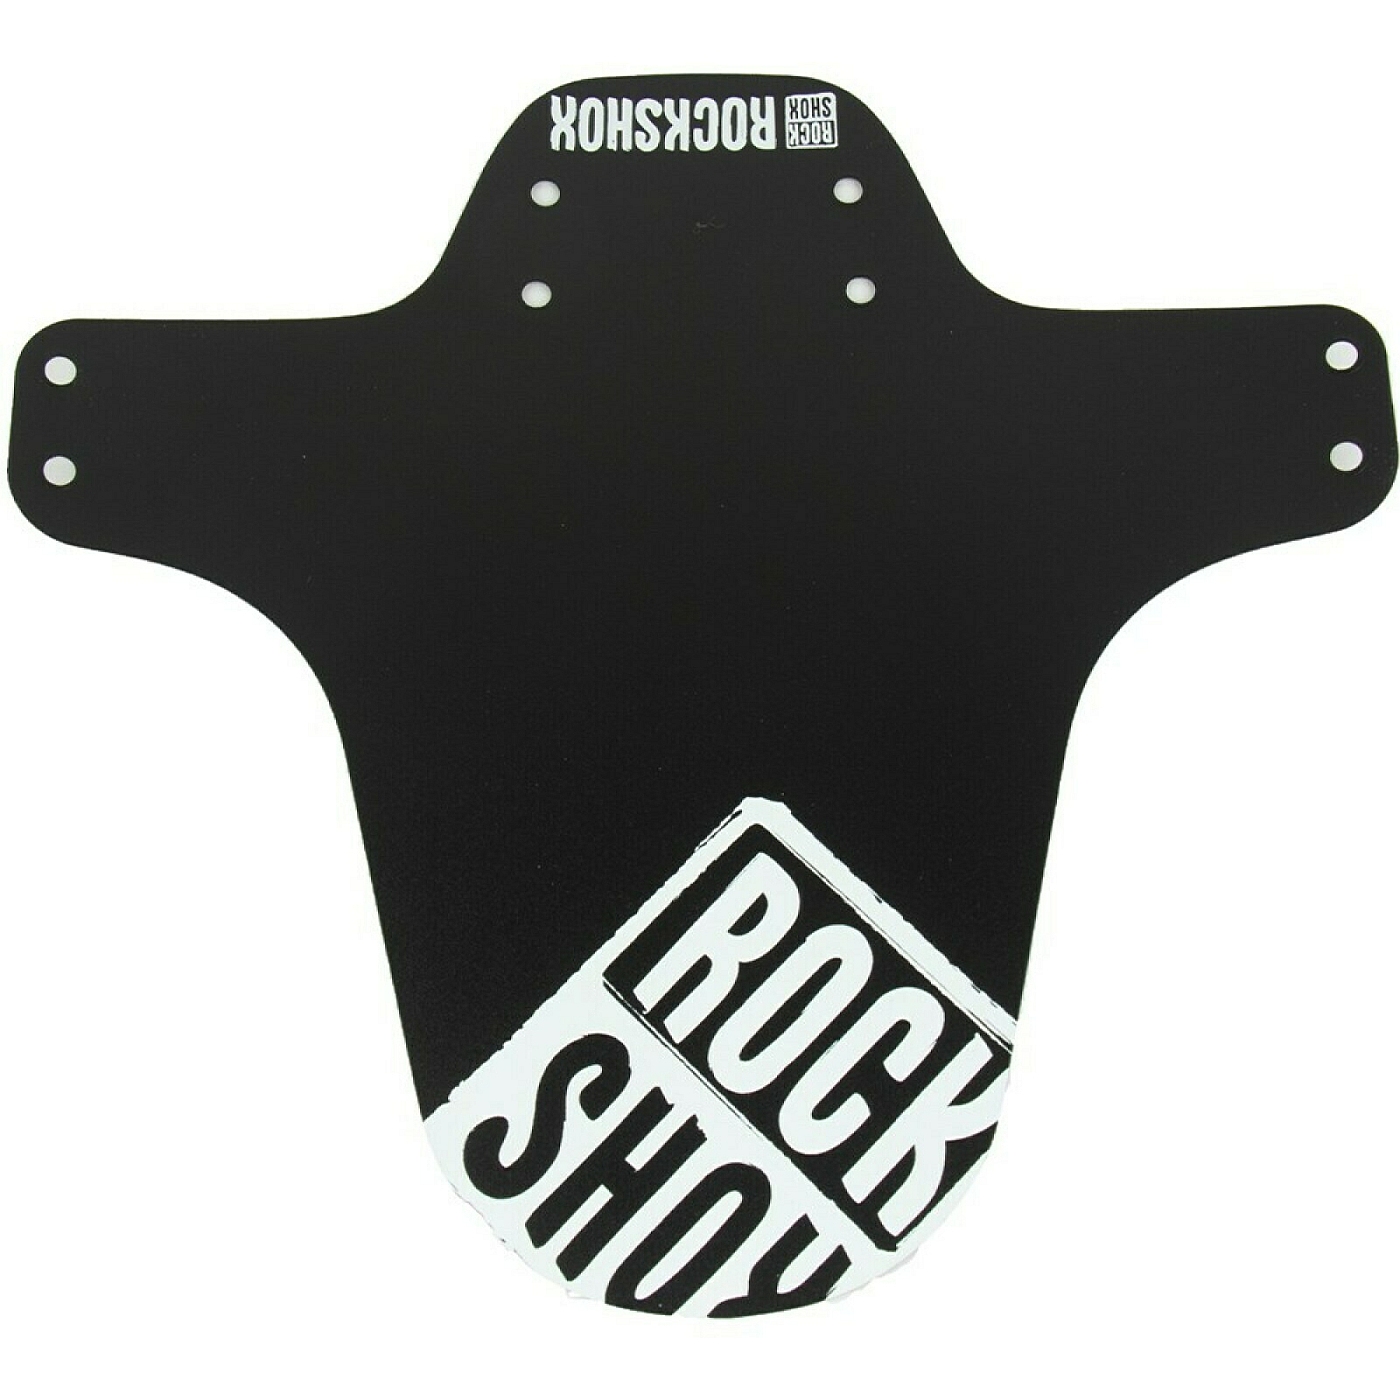 Bild von RockShox MTB Schutzblech - Black with White Distressed Logo Print